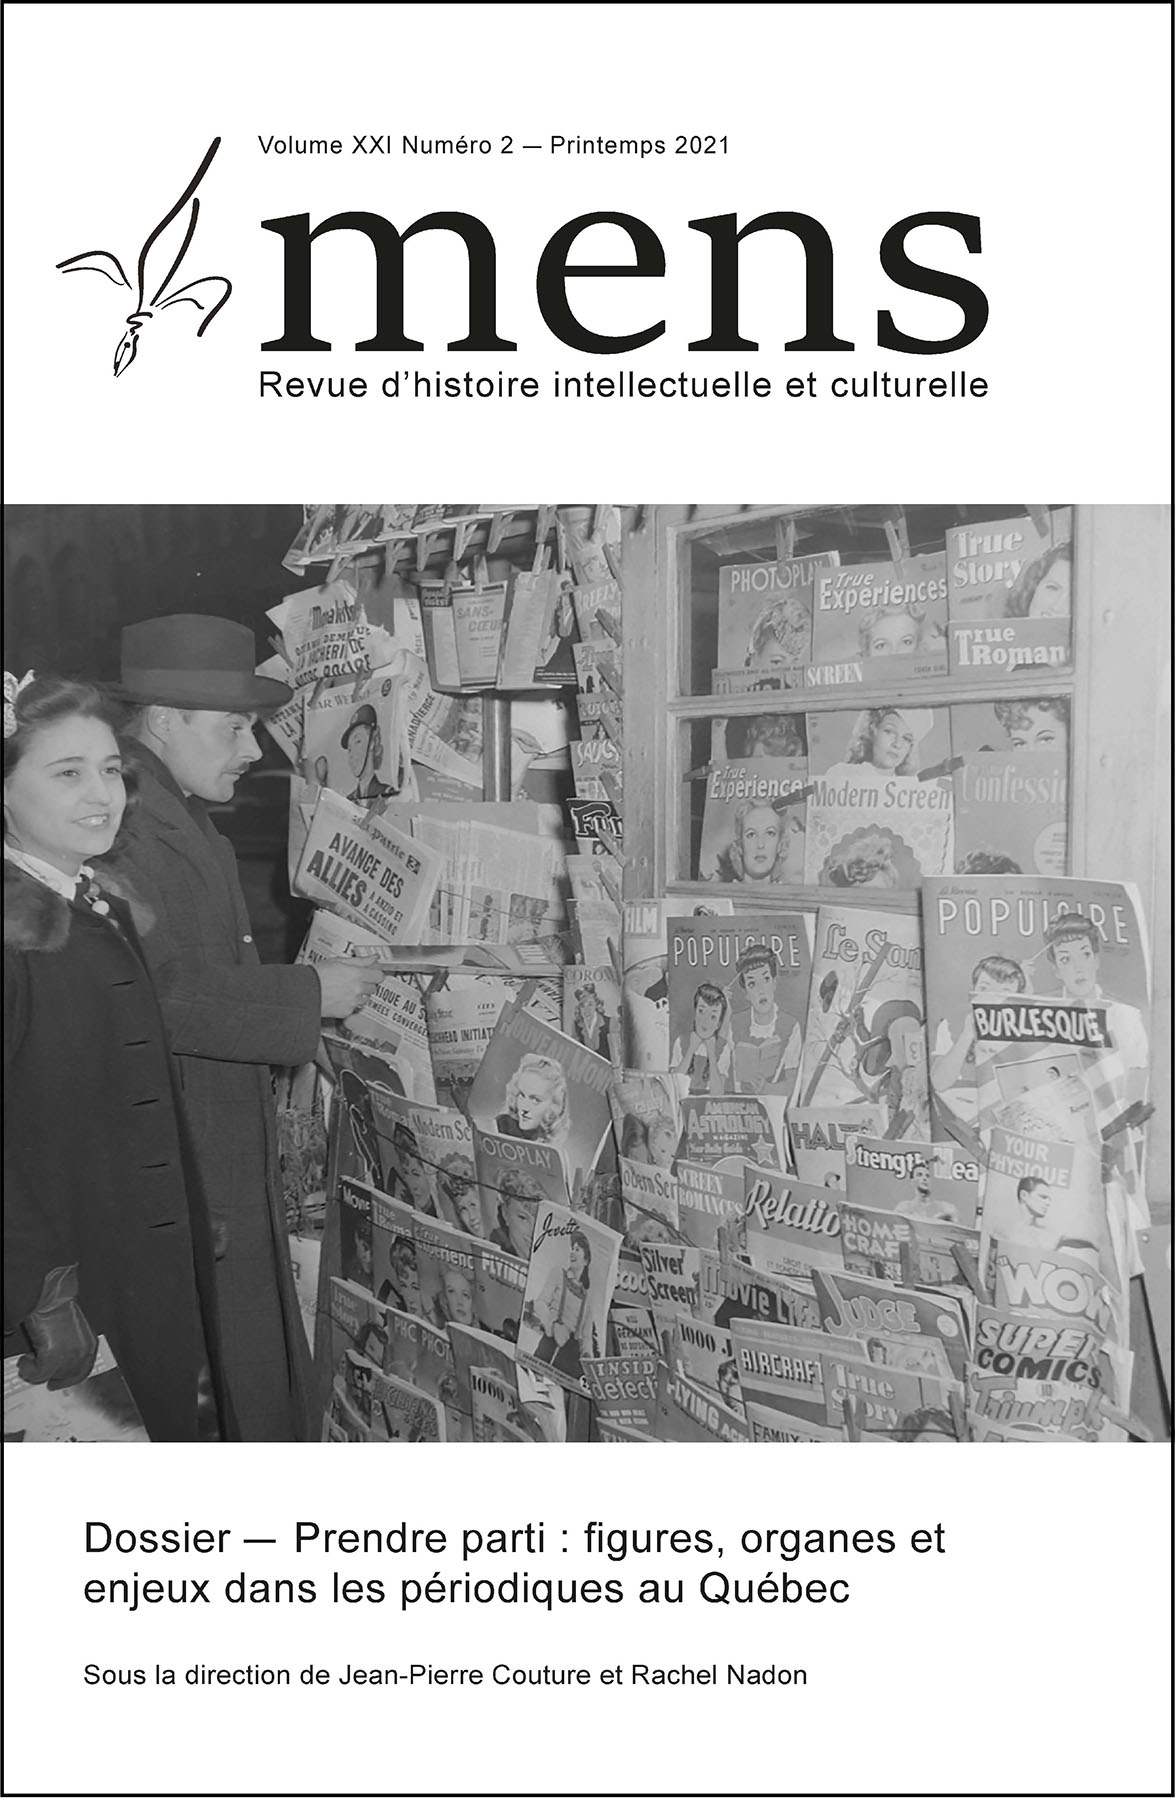 Couverture de la revue : un homme et une femme devant un kiosque à journaux.